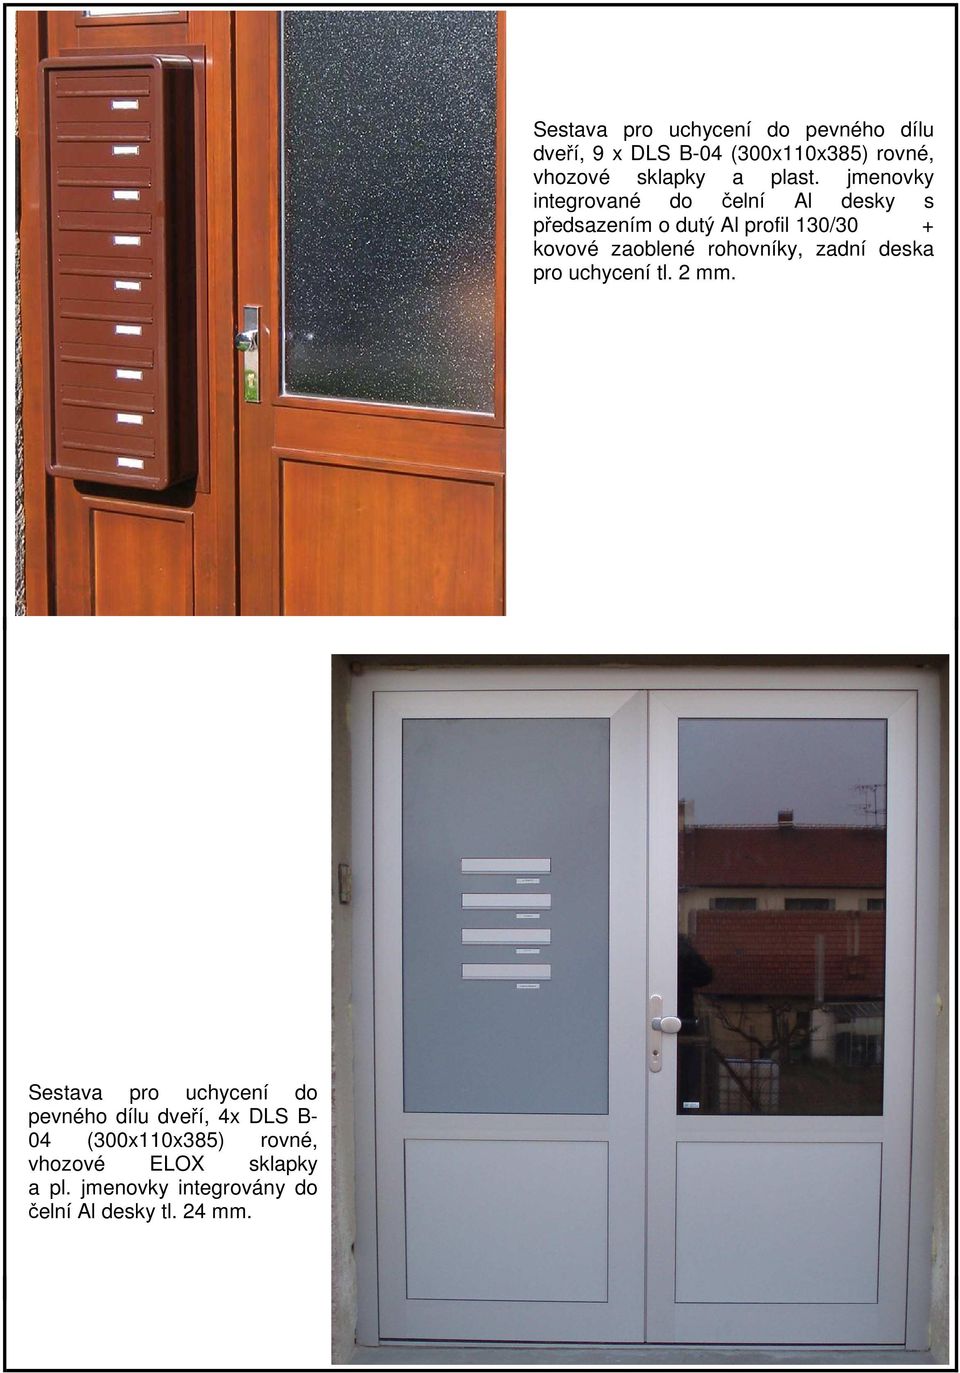 Sestava pro uchycení do pevného dílu dveří, 9 x DLS B-04 (300x110x385) rovné, vhozové sklapky a